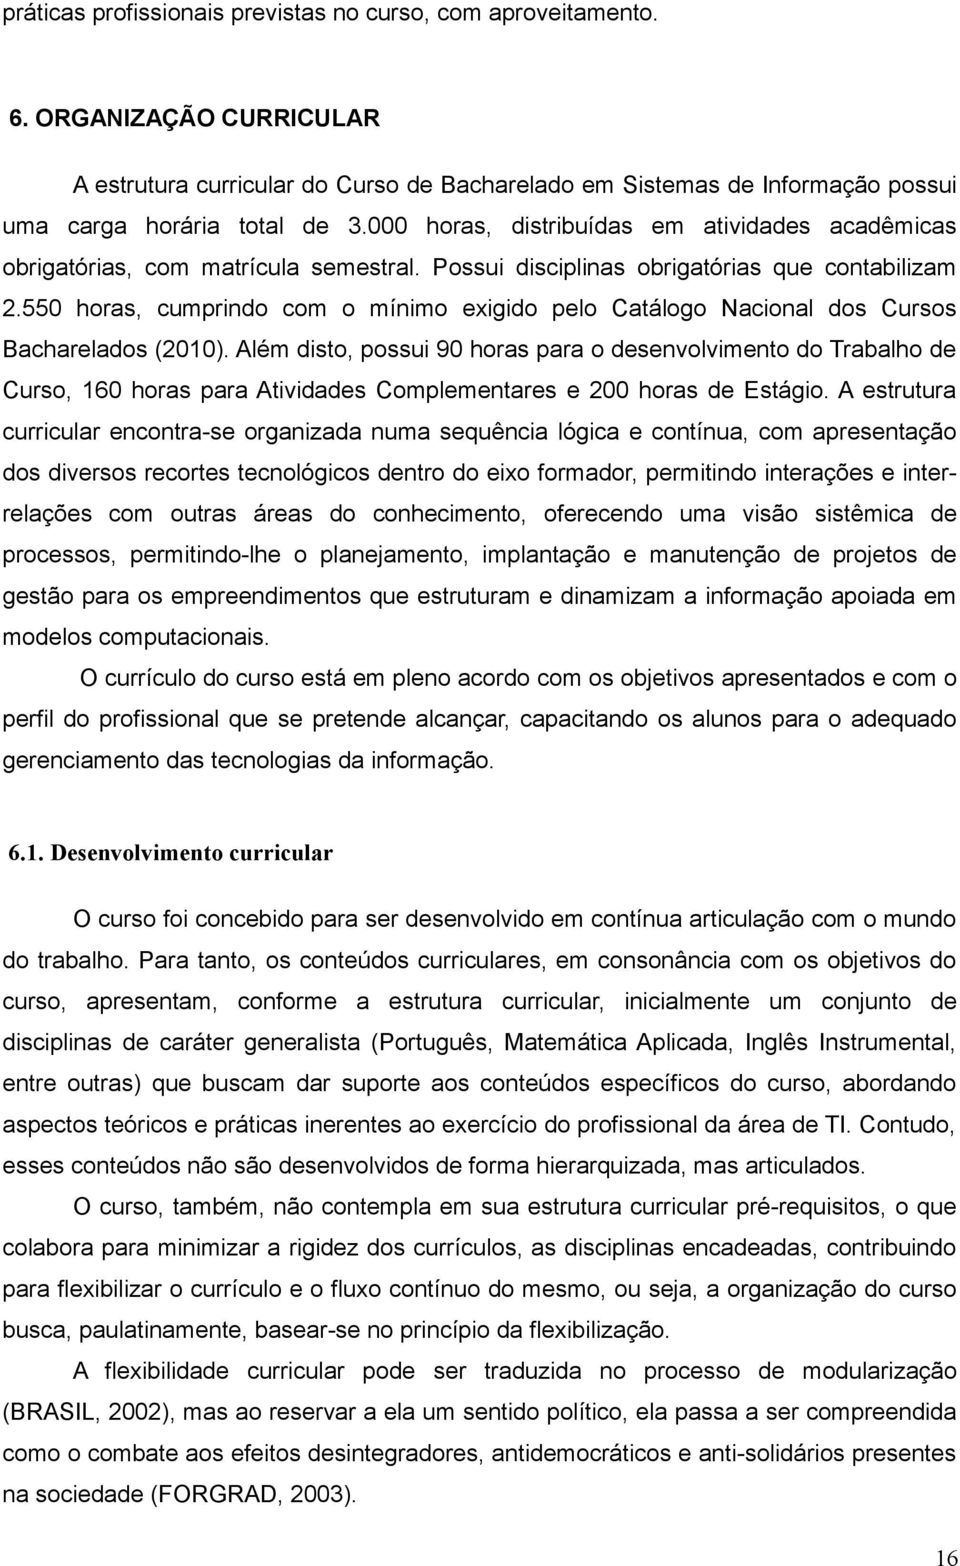 550 horas, cumprindo com o mínimo exigido pelo Catálogo Nacional dos Cursos Bacharelados (2010).